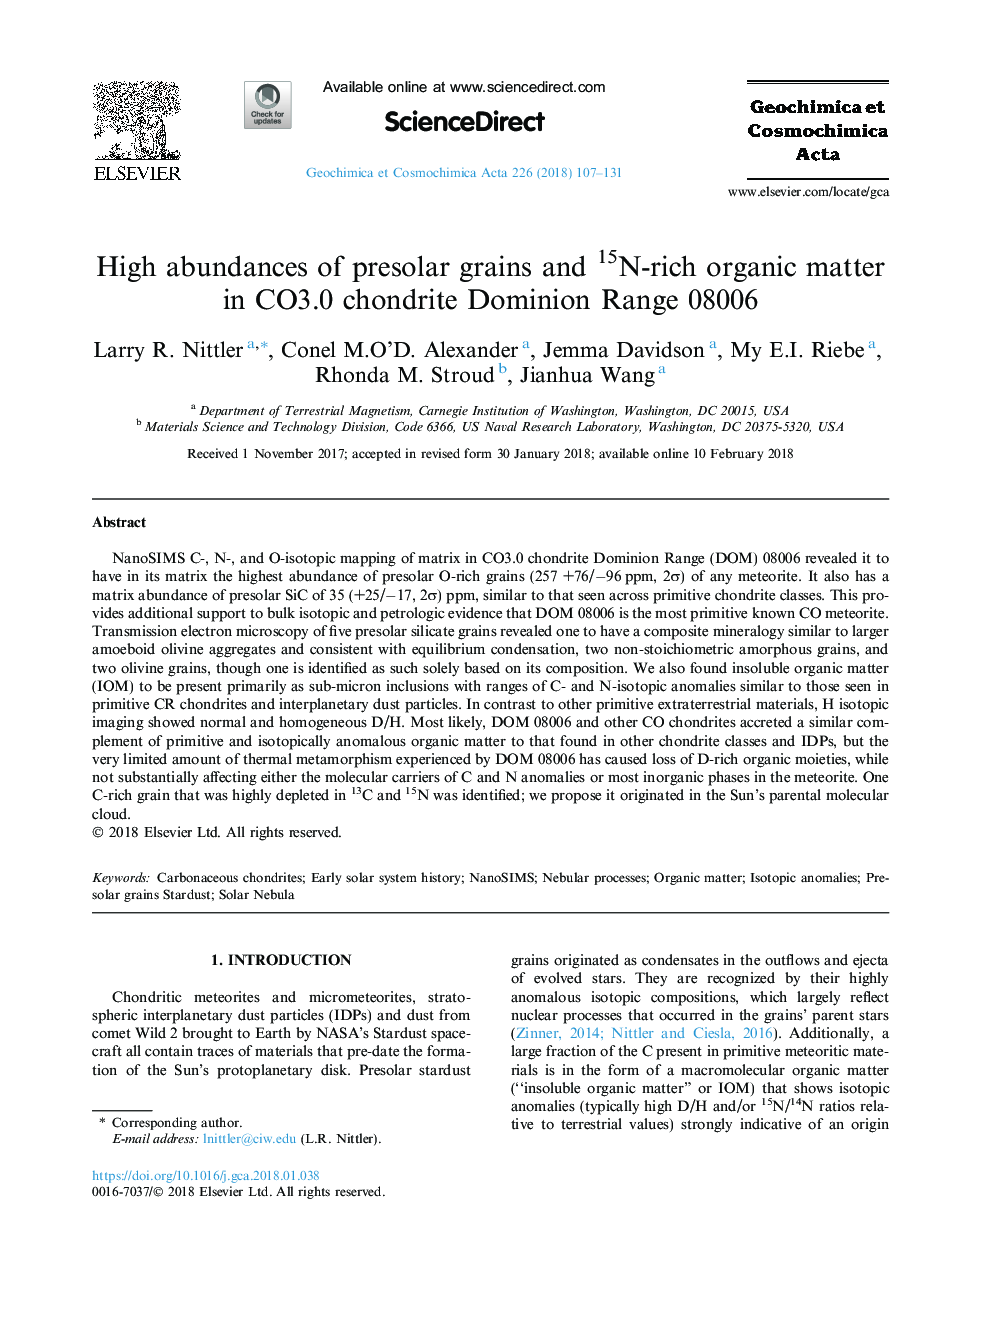 High abundances of presolar grains and 15N-rich organic matter in CO3.0 chondrite Dominion Range 08006